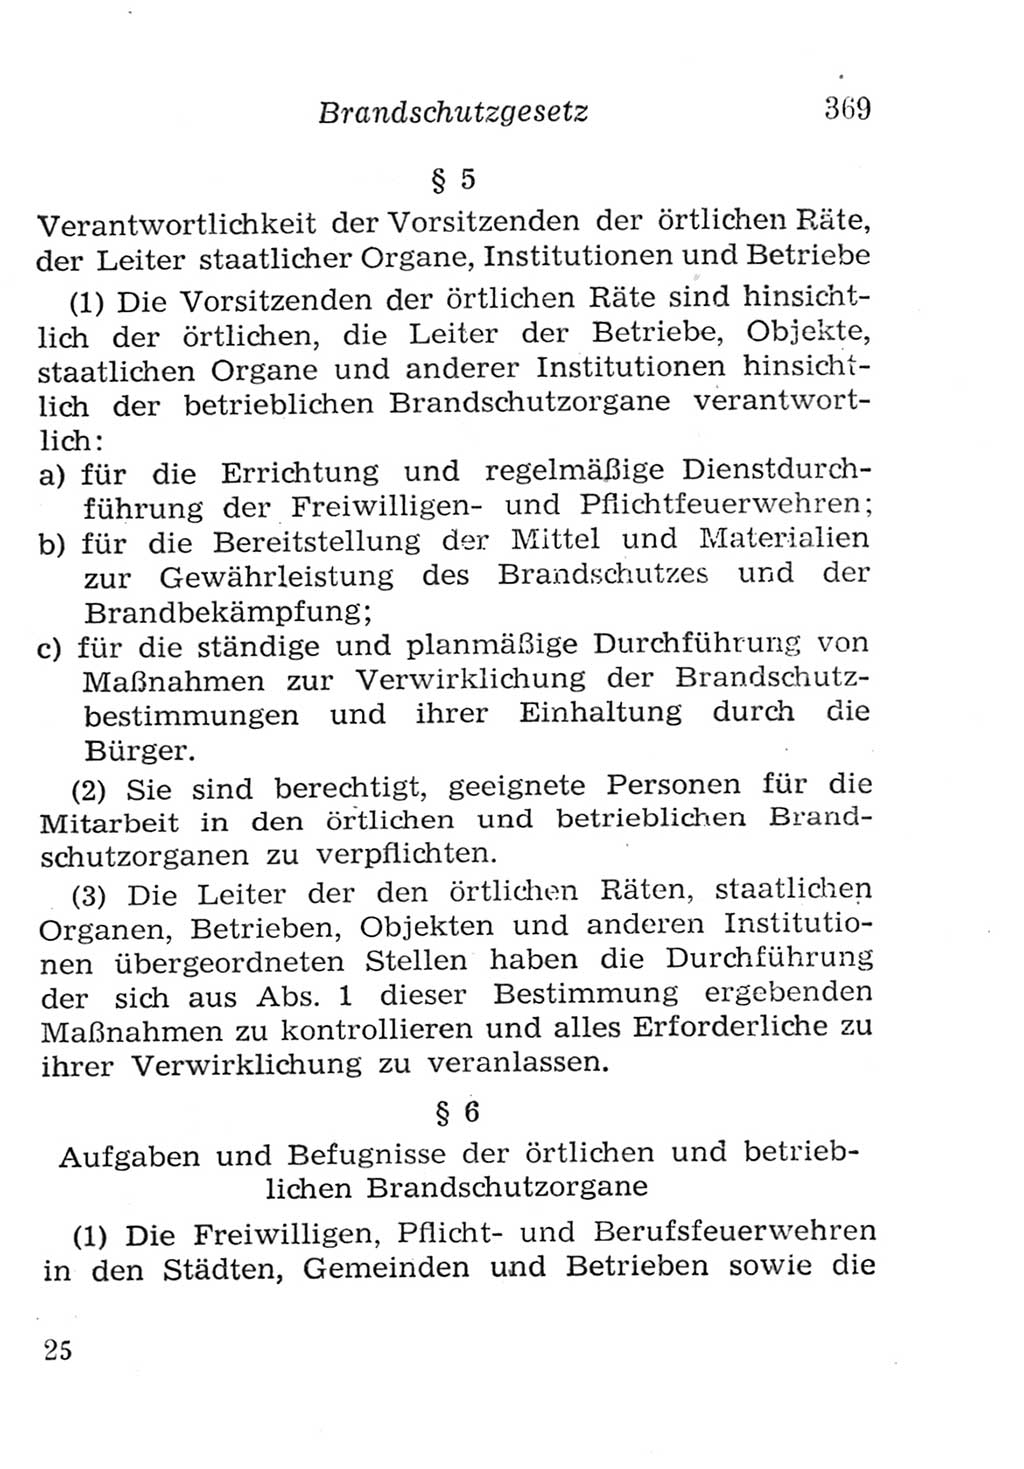 Strafgesetzbuch (StGB) und andere Strafgesetze [Deutsche Demokratische Republik (DDR)] 1957, Seite 369 (StGB Strafges. DDR 1957, S. 369)